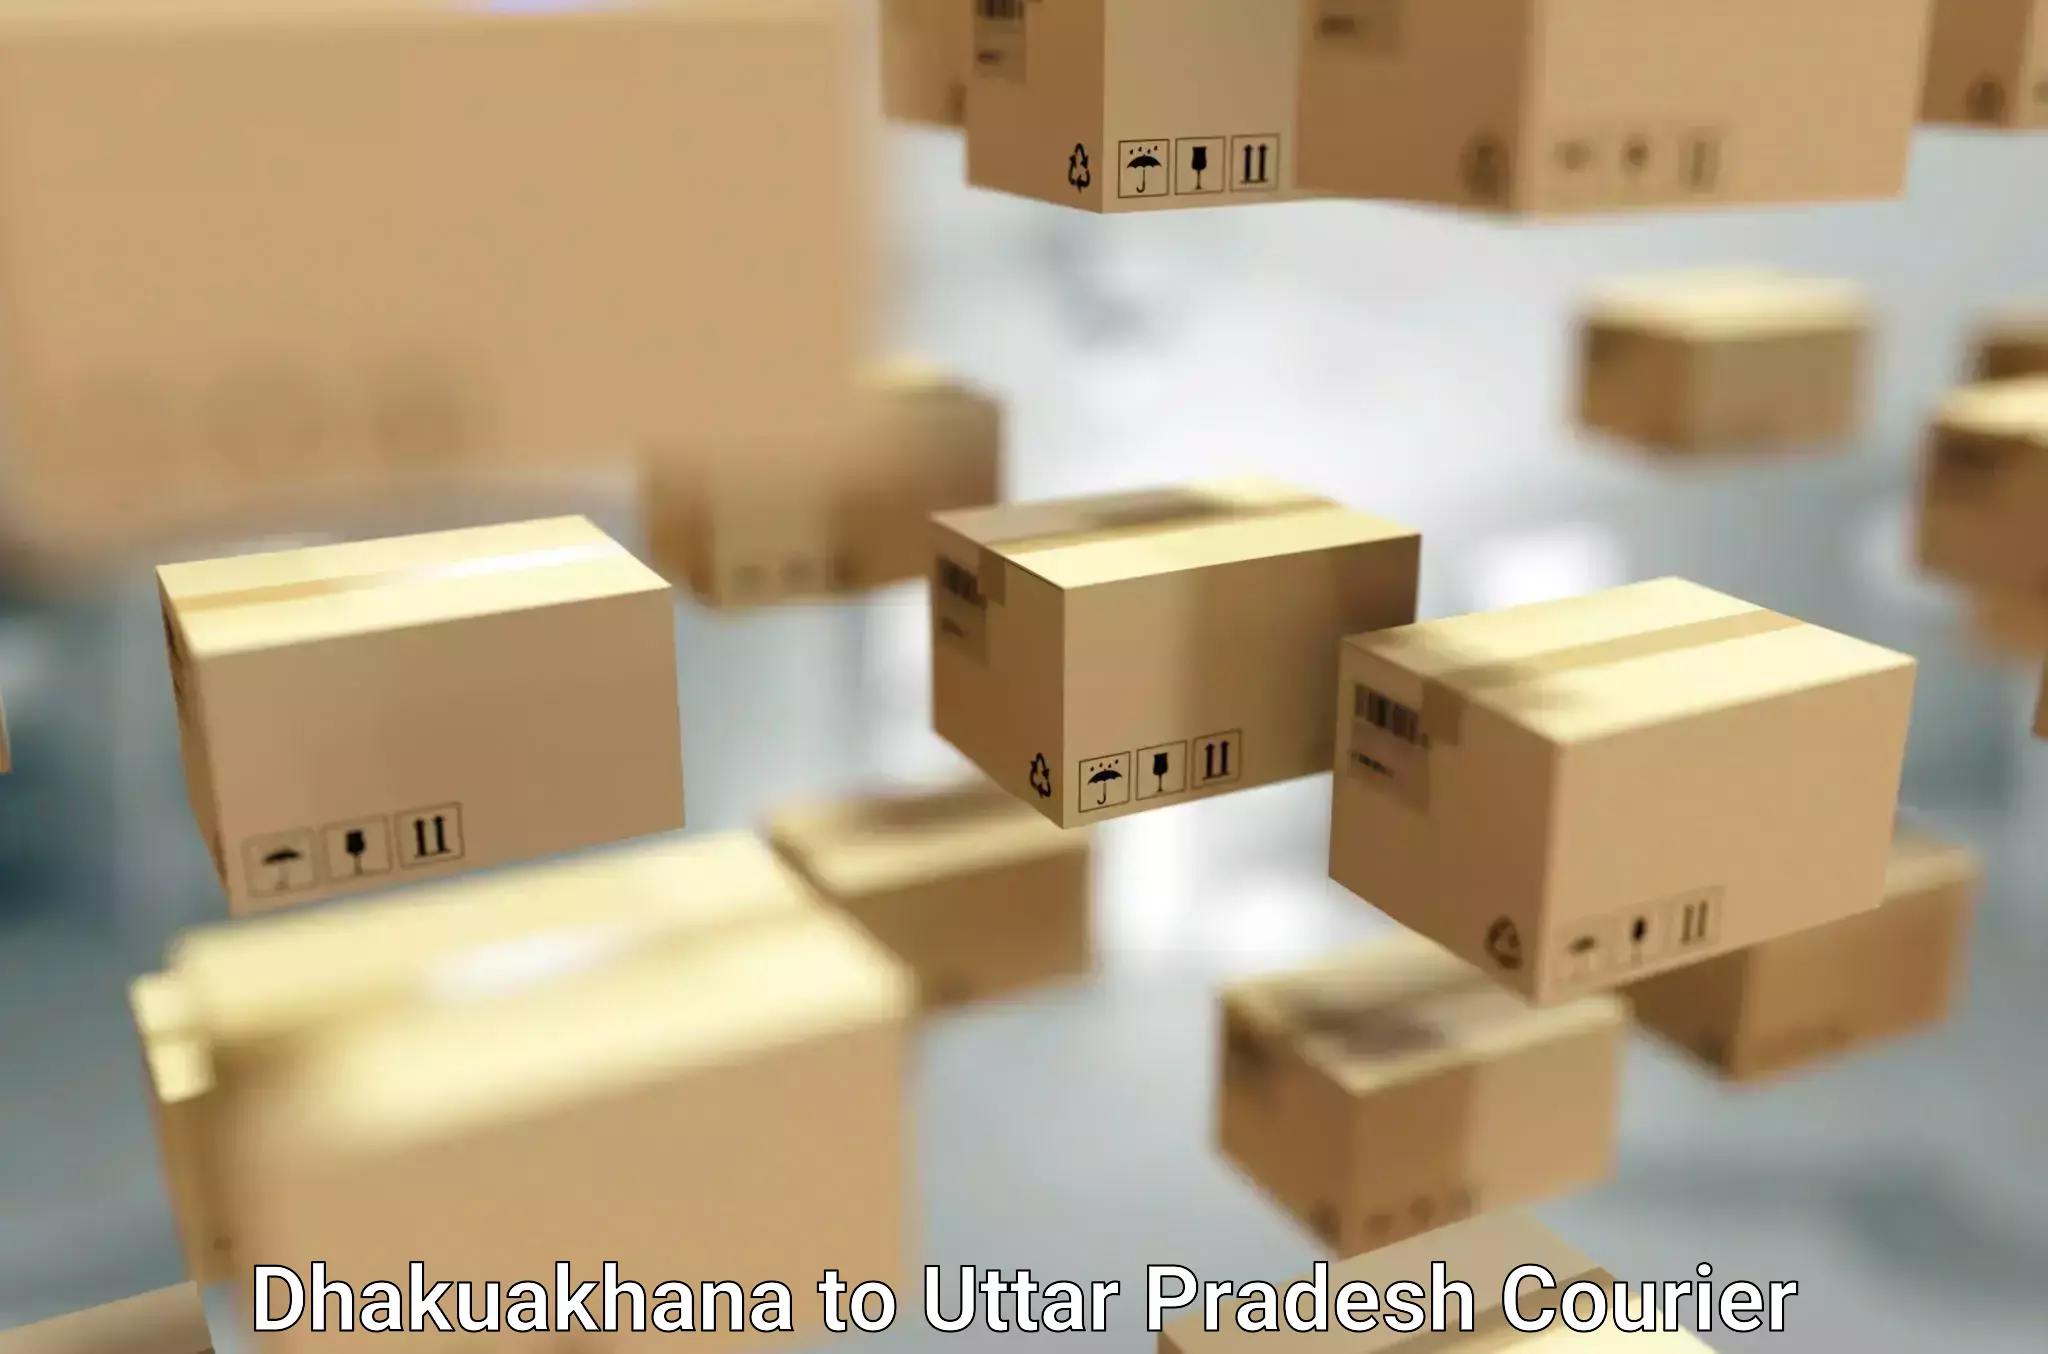 Cost-effective moving options Dhakuakhana to Noida